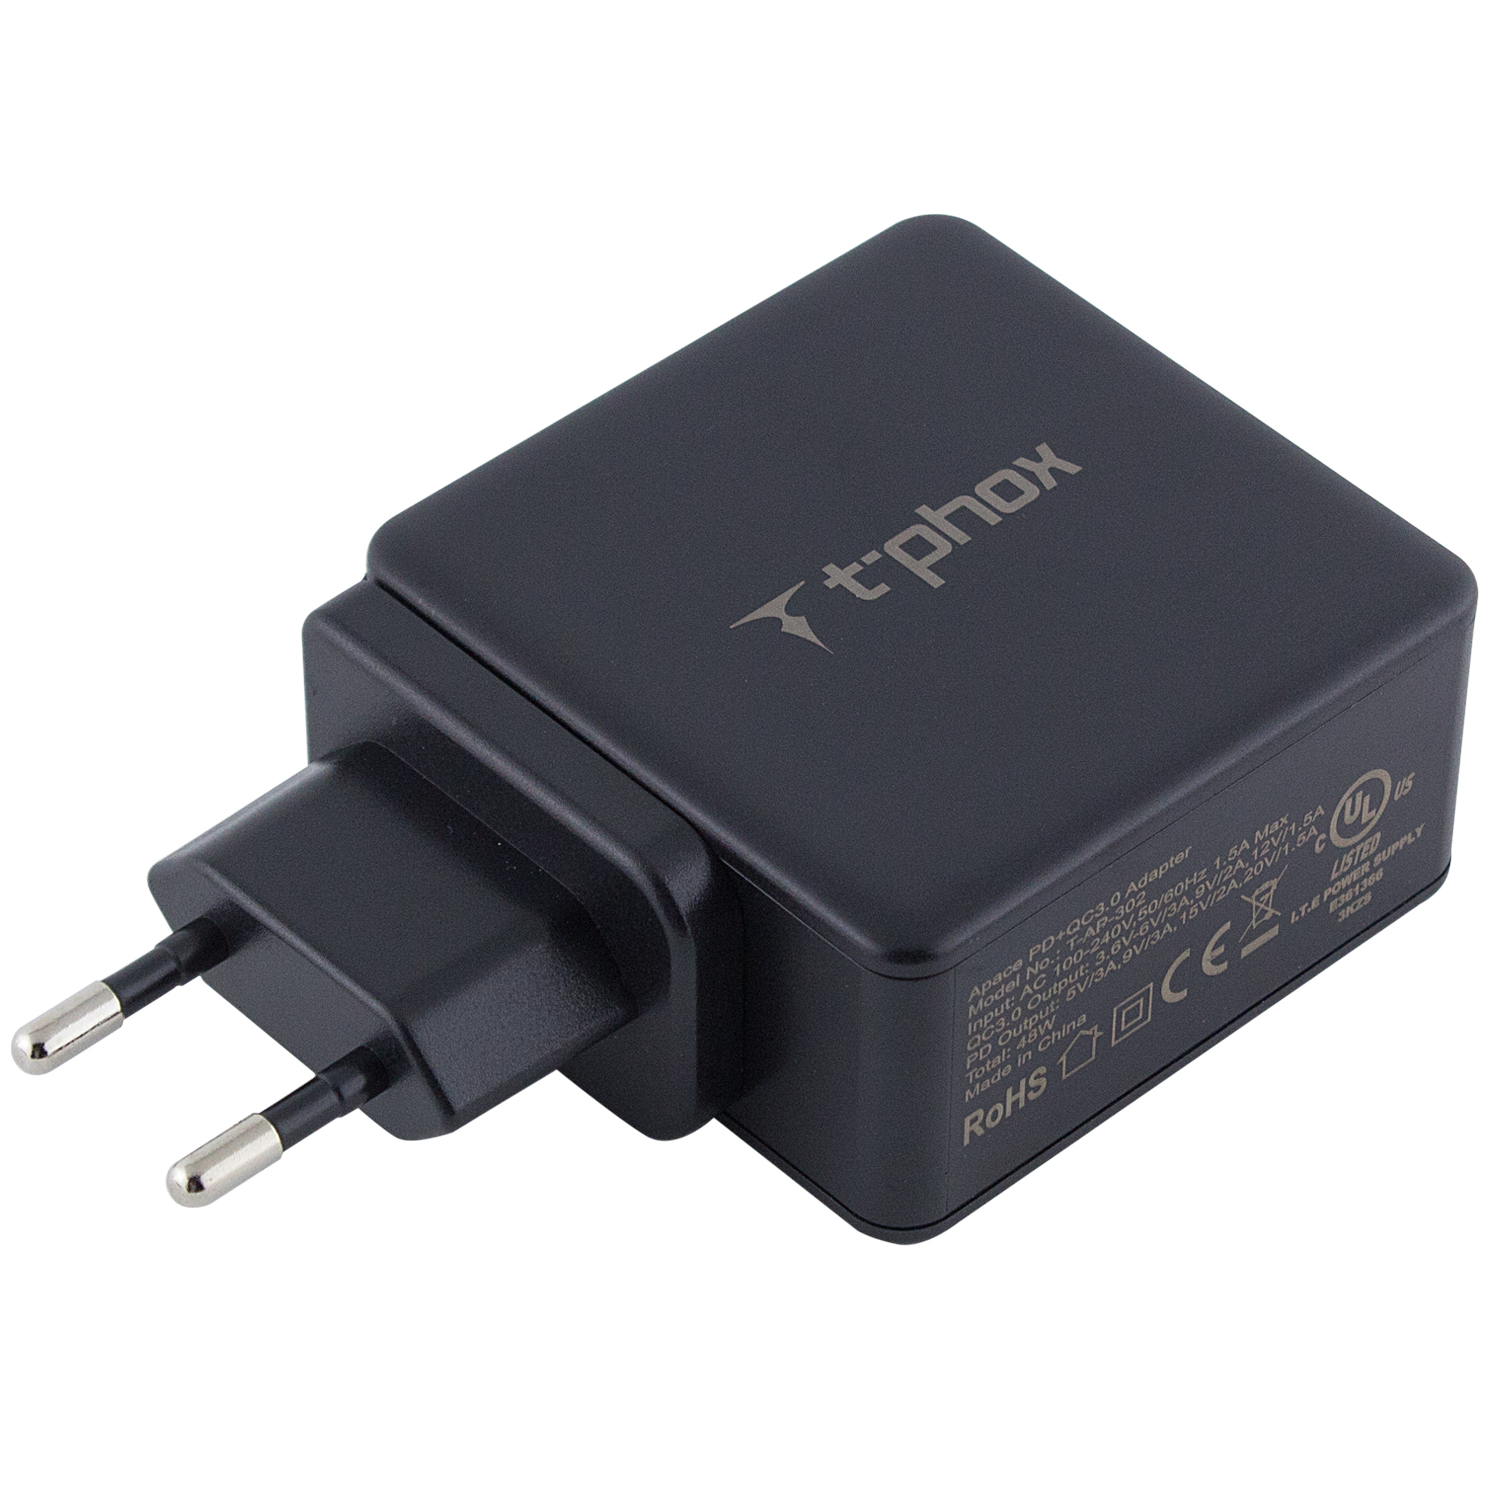 СЗУ PD адаптер T-phox (48W: PD 30W + USB QuickCharge QC 3.0 18W) (Черный)